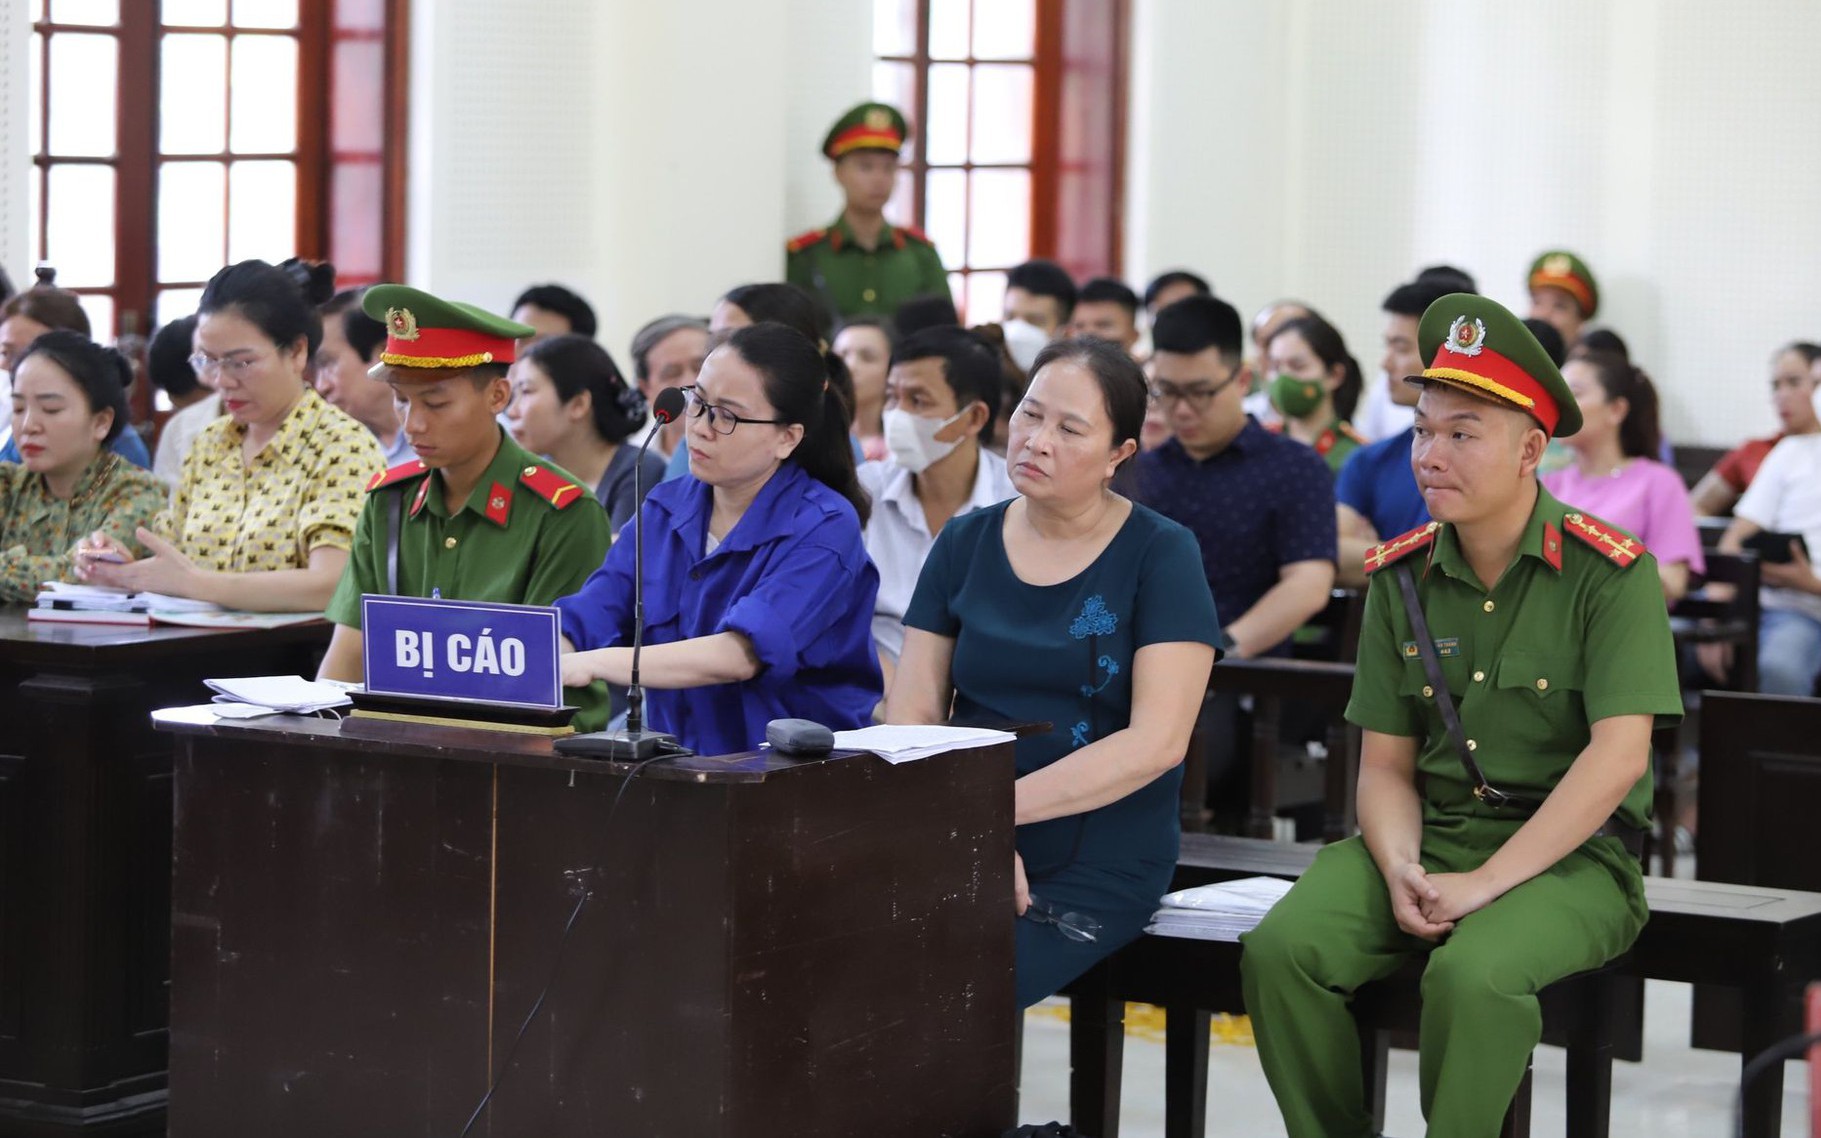 Xét xử cô giáo Lê Thị Dung: Đề nghị hủy án sơ thẩm